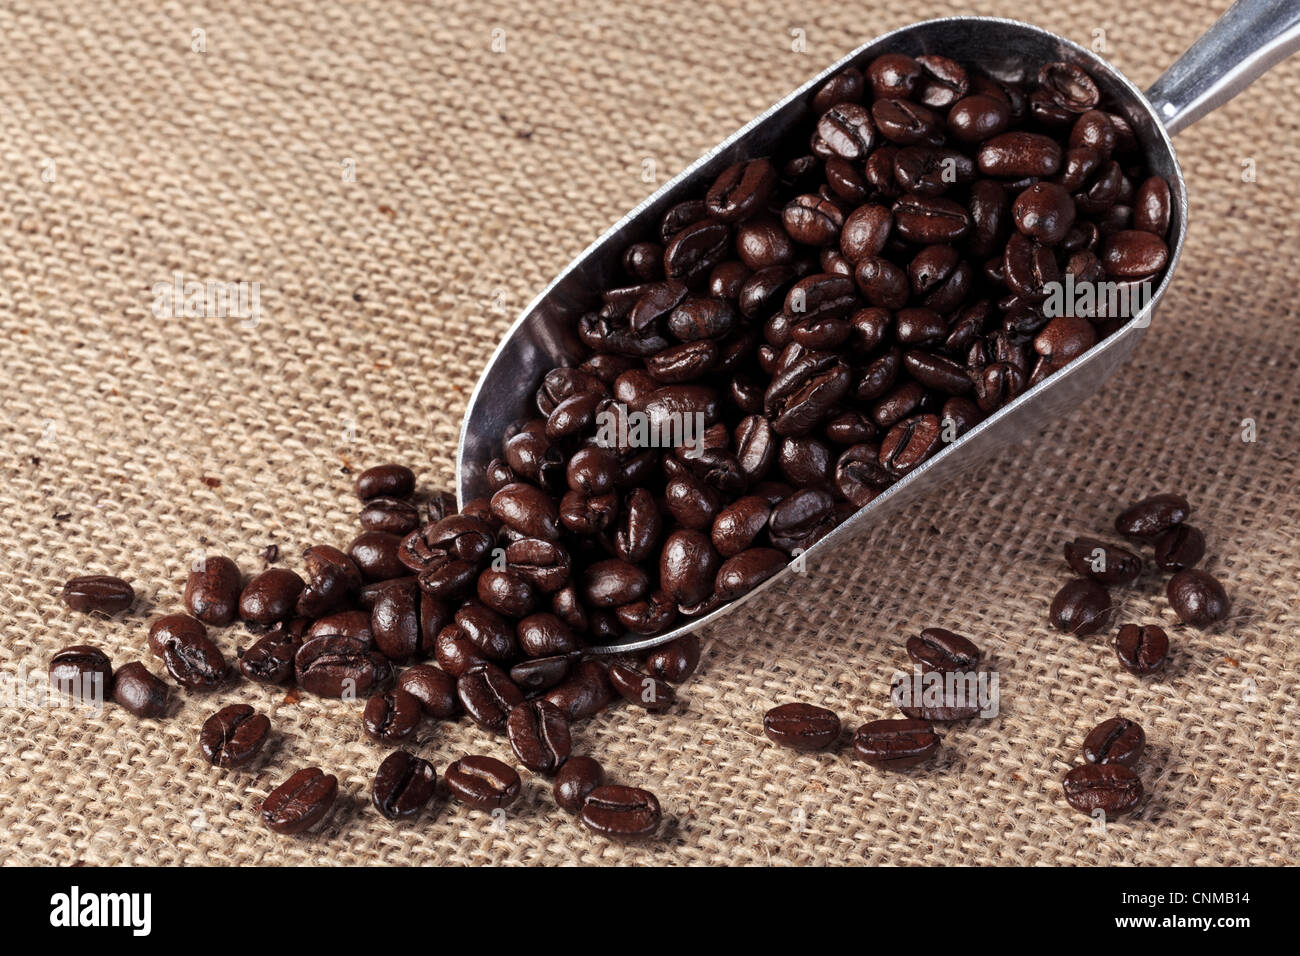 Foto de tostado fresco granos de café arábica y robusta en una cuchara de metal en un fondo de saco hesian. Foto de stock